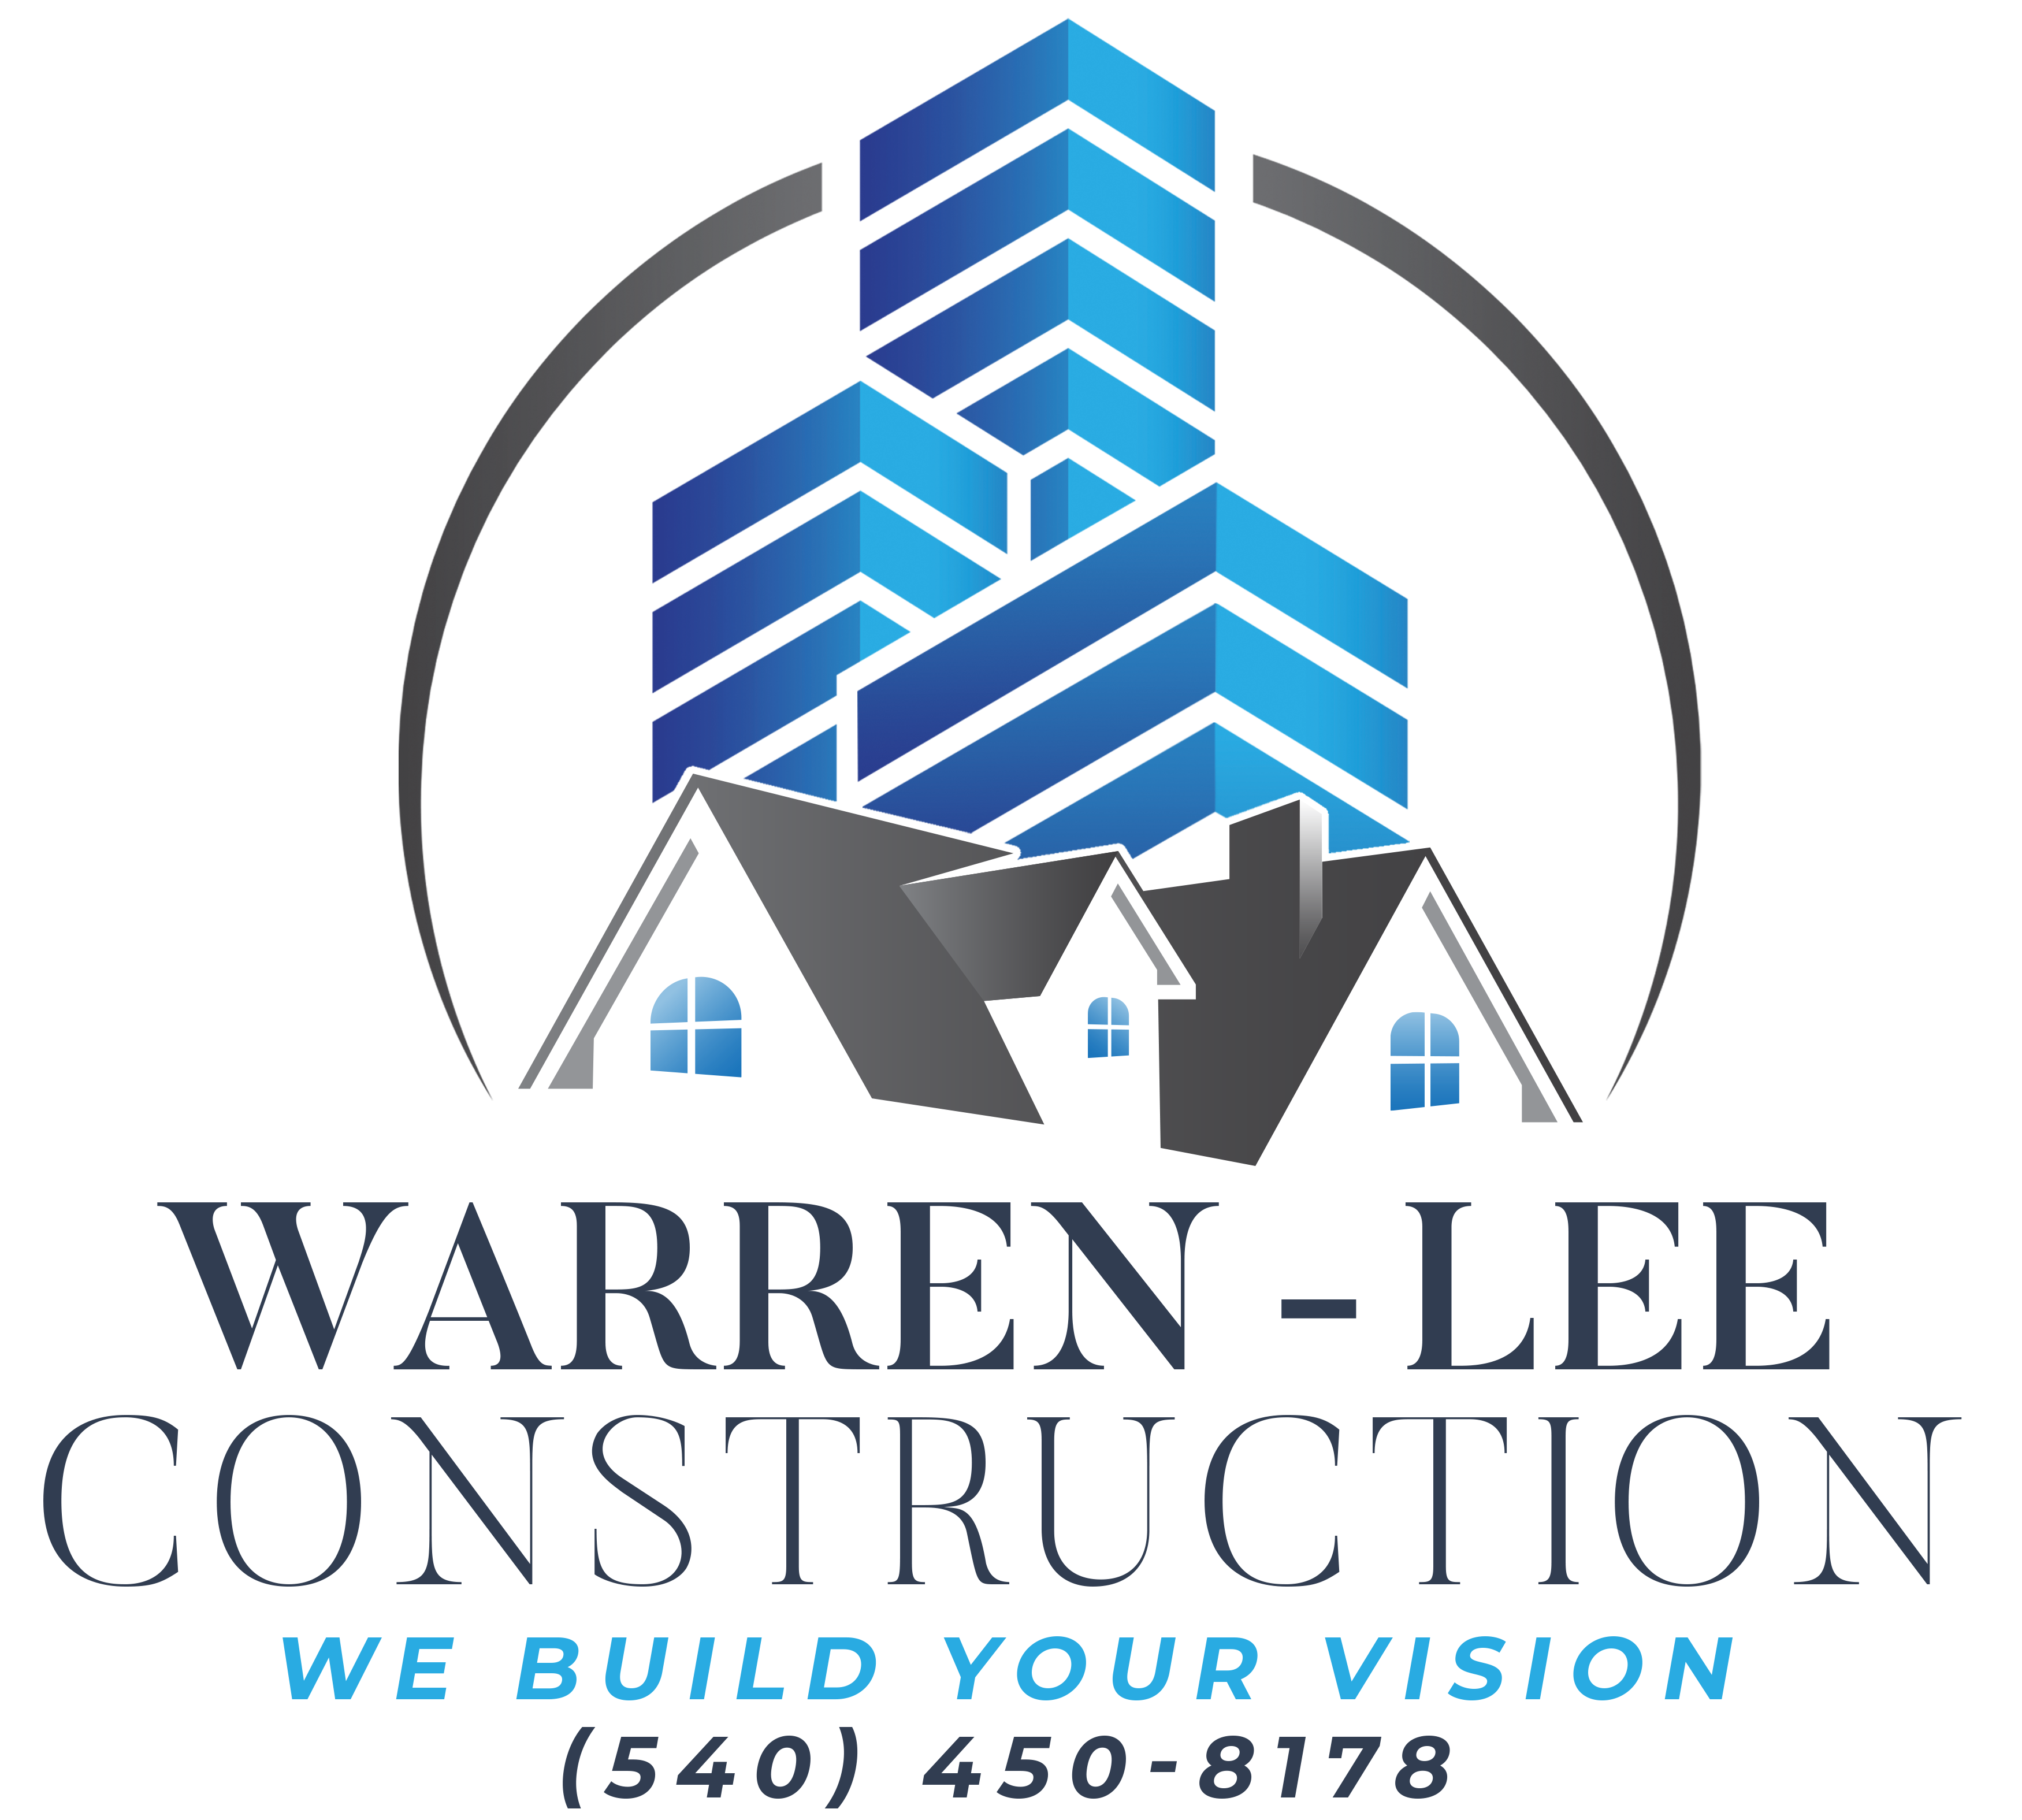 Warren-Lee Construction